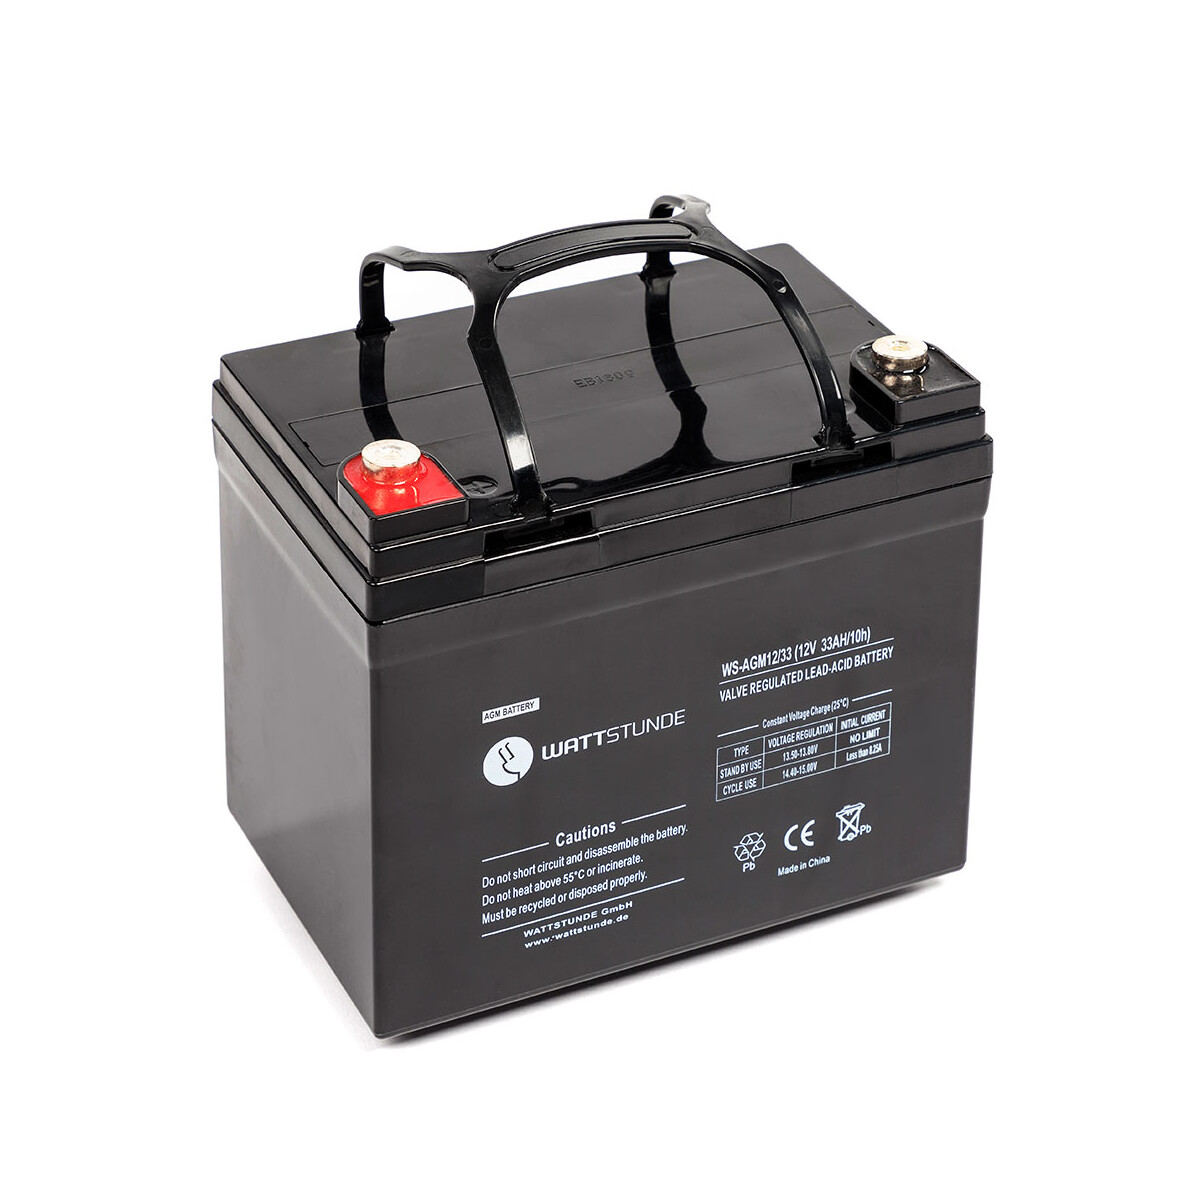 AKO Batterieladegerät für 12 Volt Nass- und AGM-Akkus